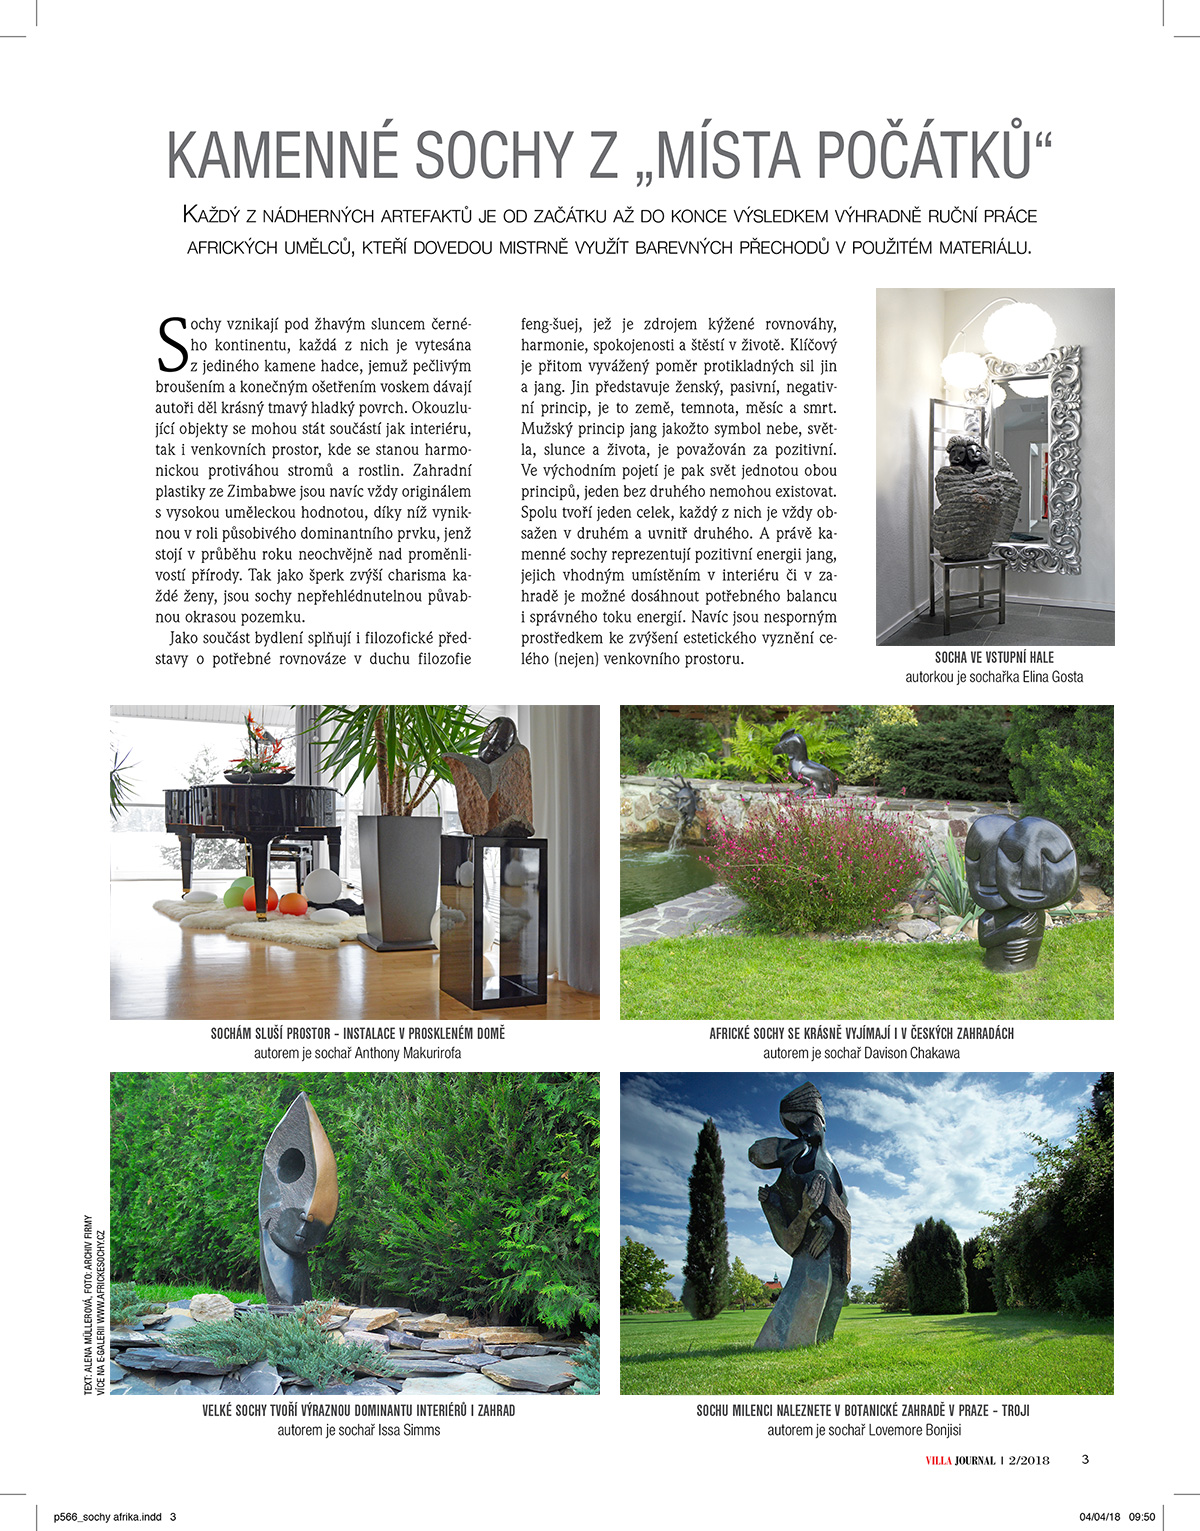 Článek o kamenných sochách ve Villa journal 2/2018